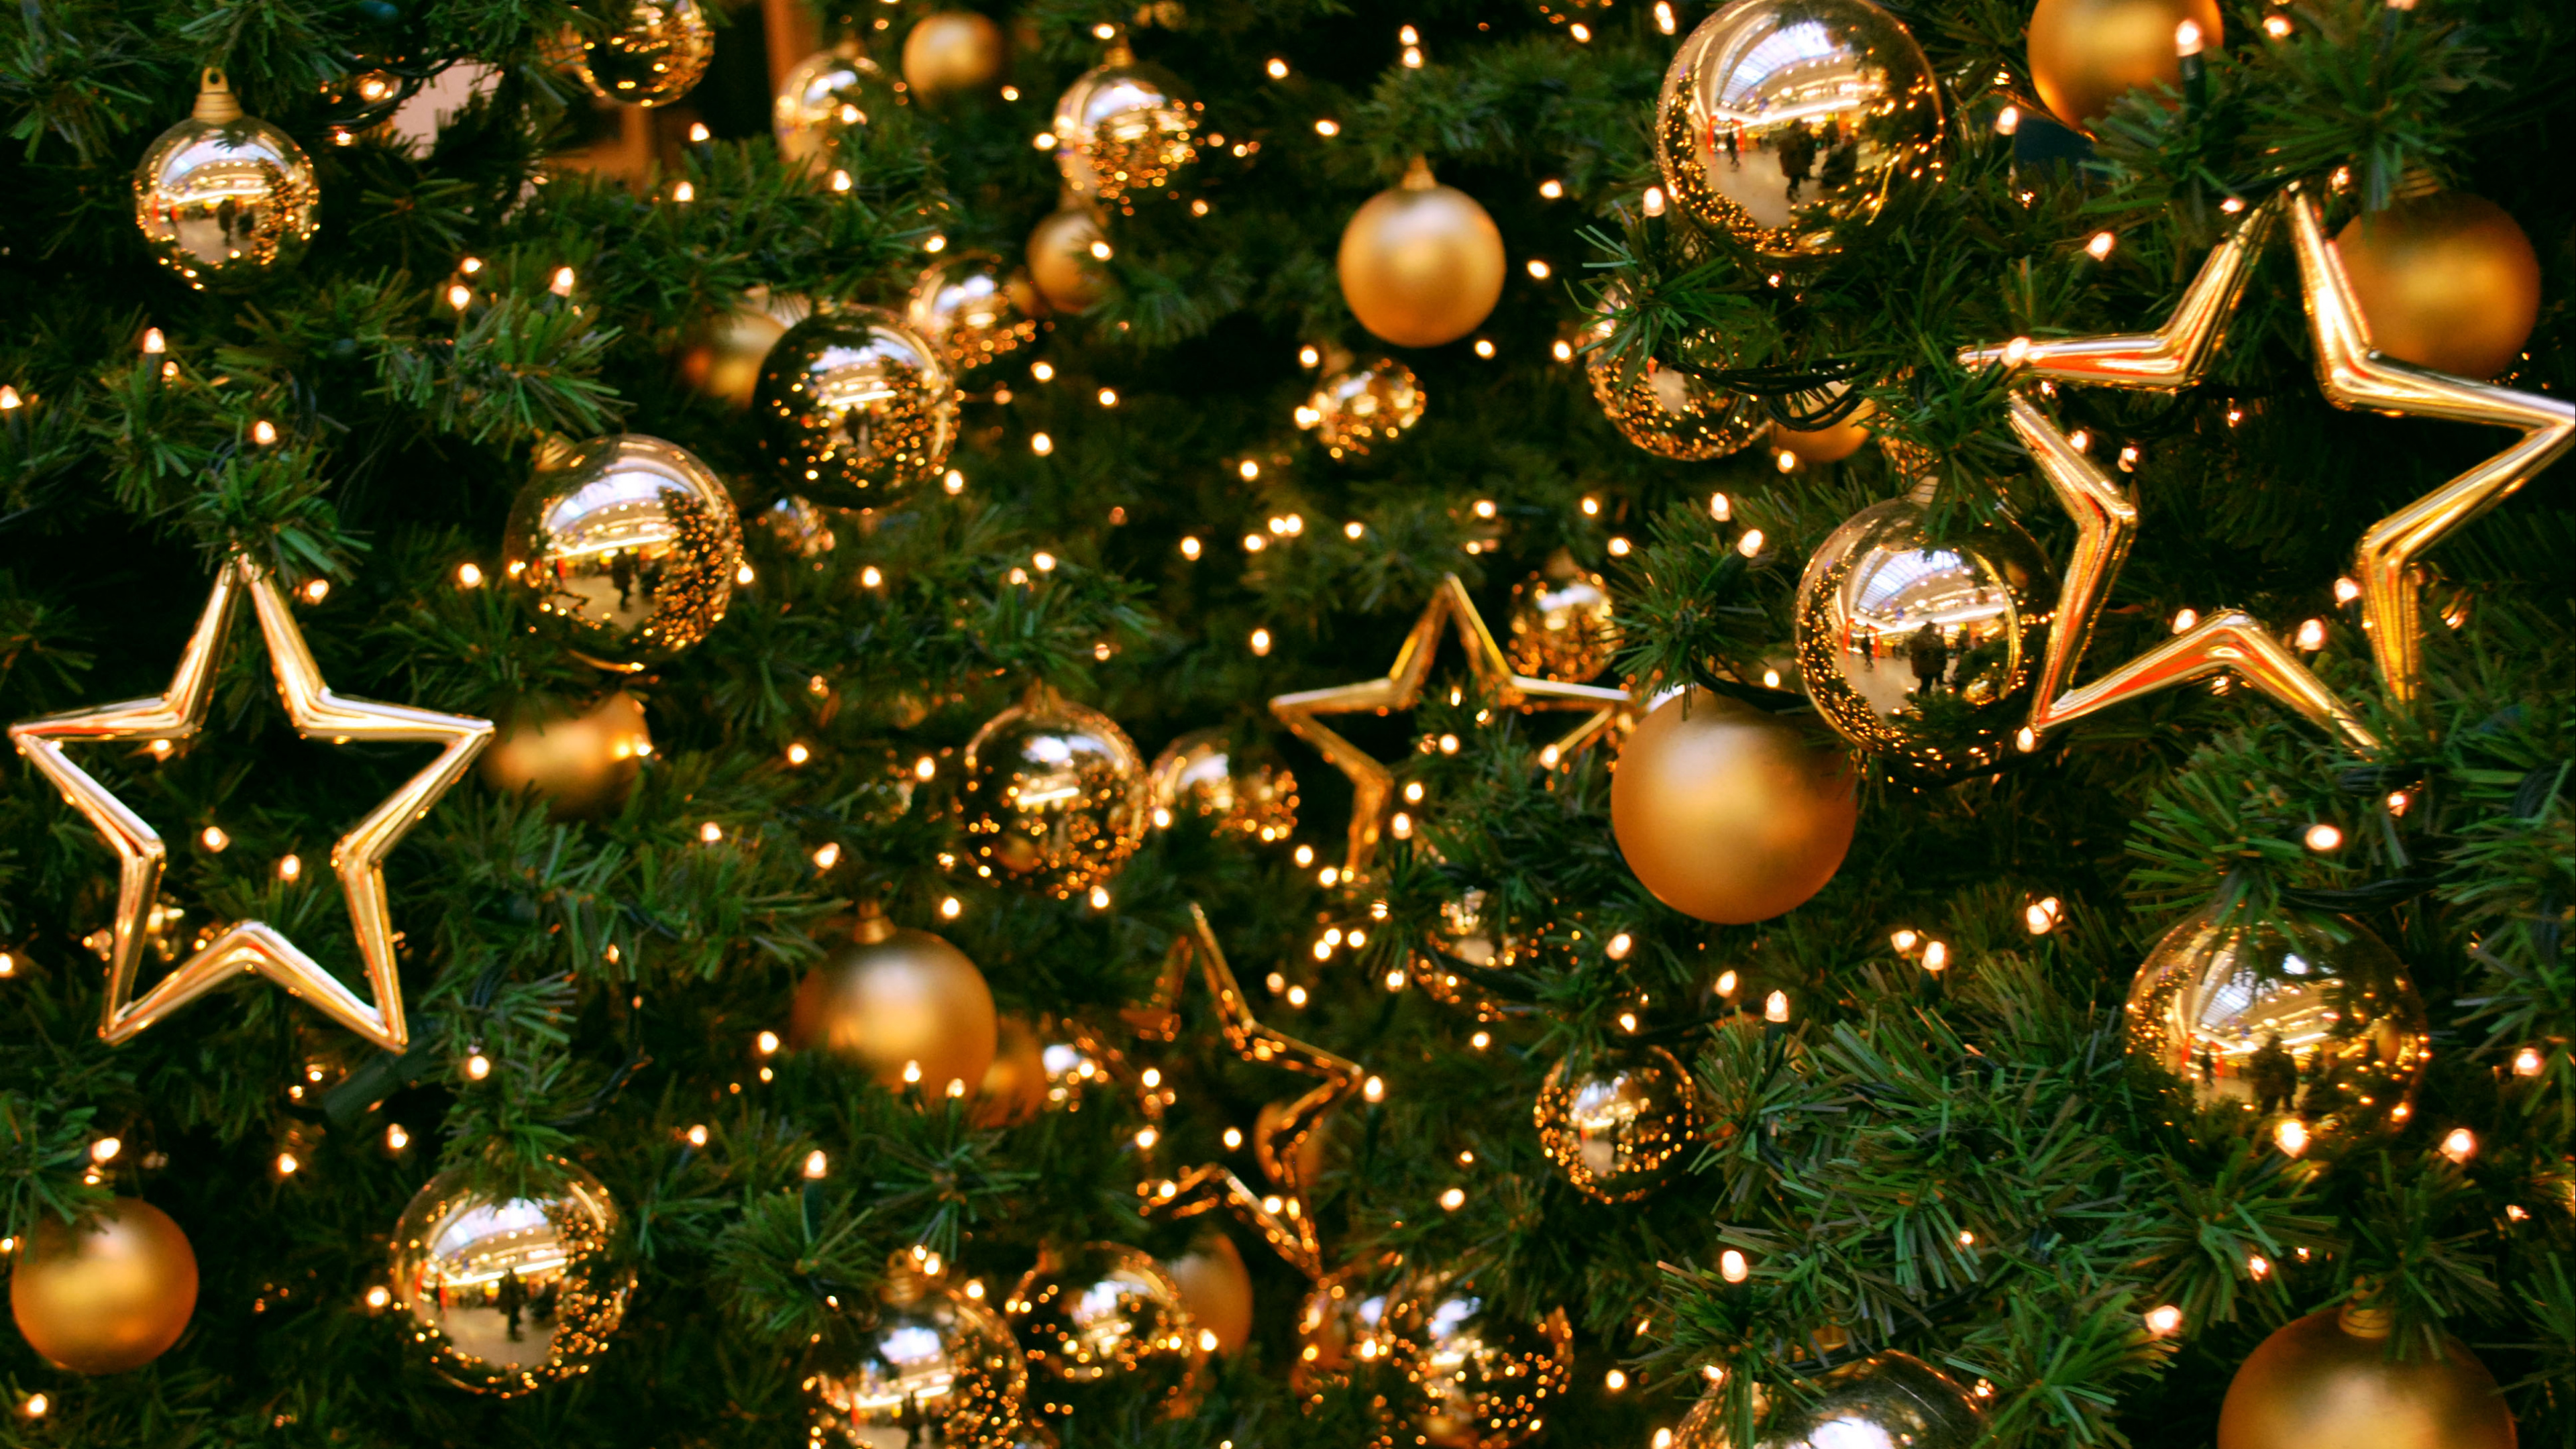 Weihnachtsbaum, Weihnachten, Christmas Ornament, Neujahr, Weihnachtsdekoration. Wallpaper in 3840x2160 Resolution